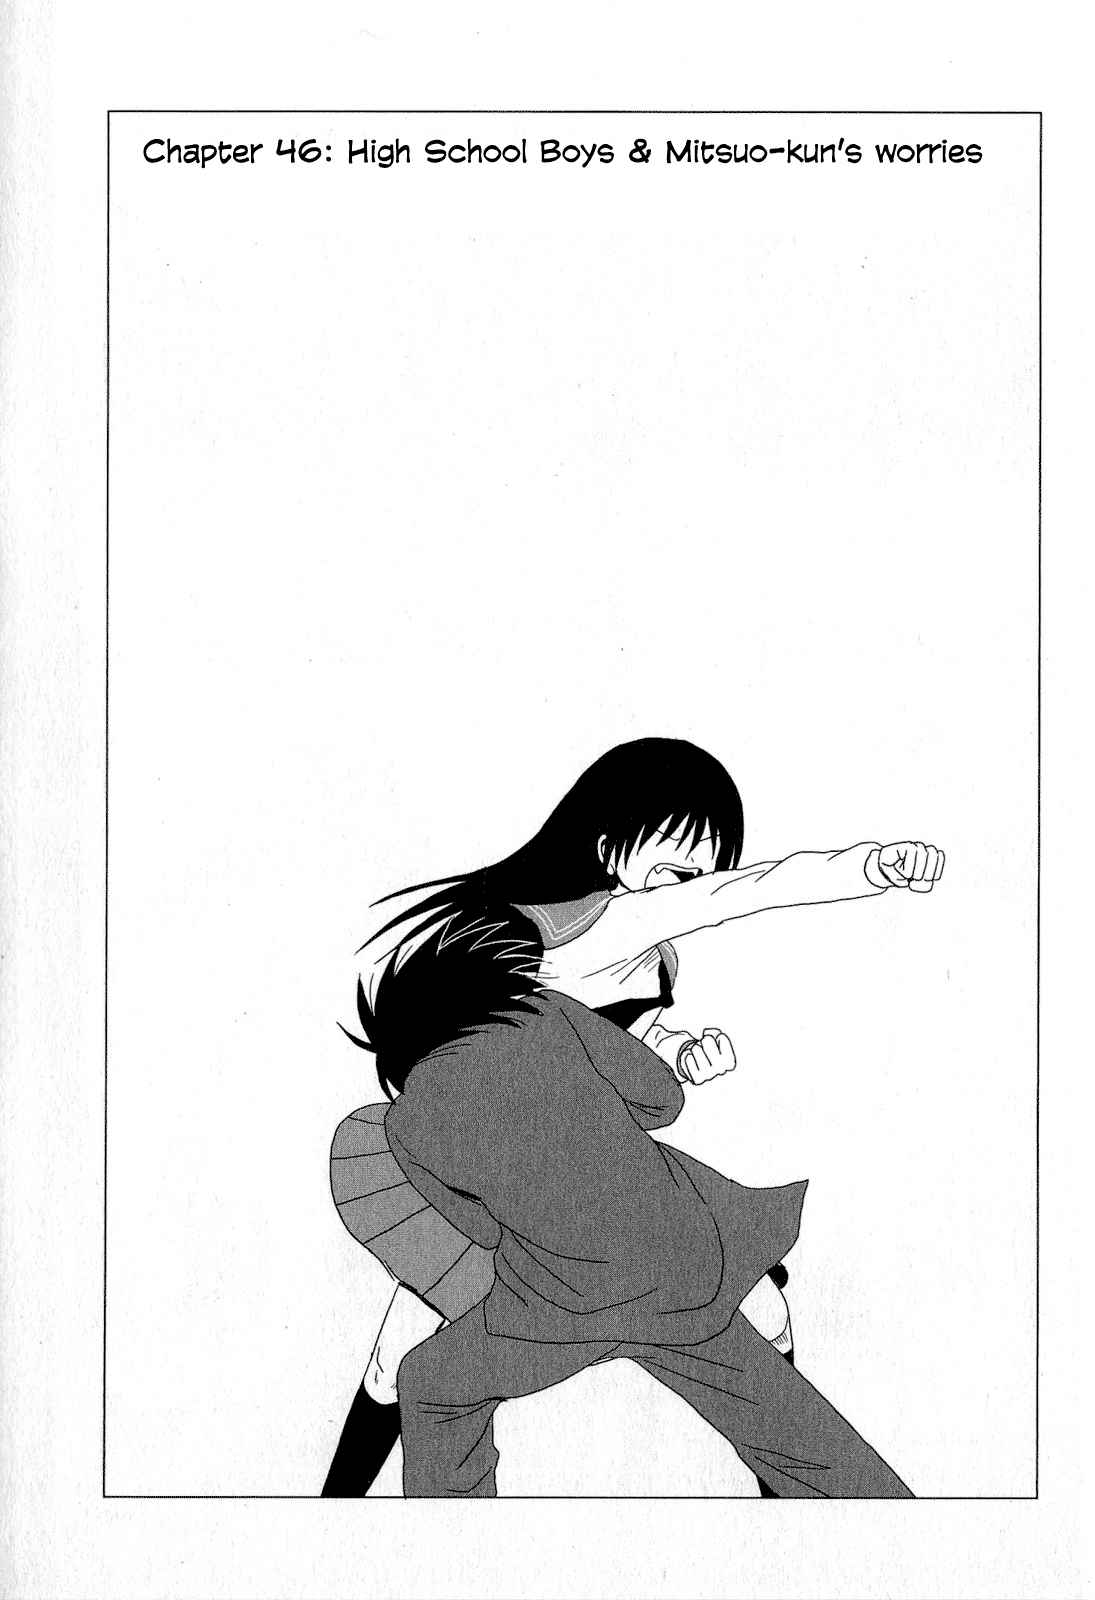 Danshi Koukousei no Nichijou Vol. 3 Ch. 46 High School Boys And Mitsuo kun's Worries